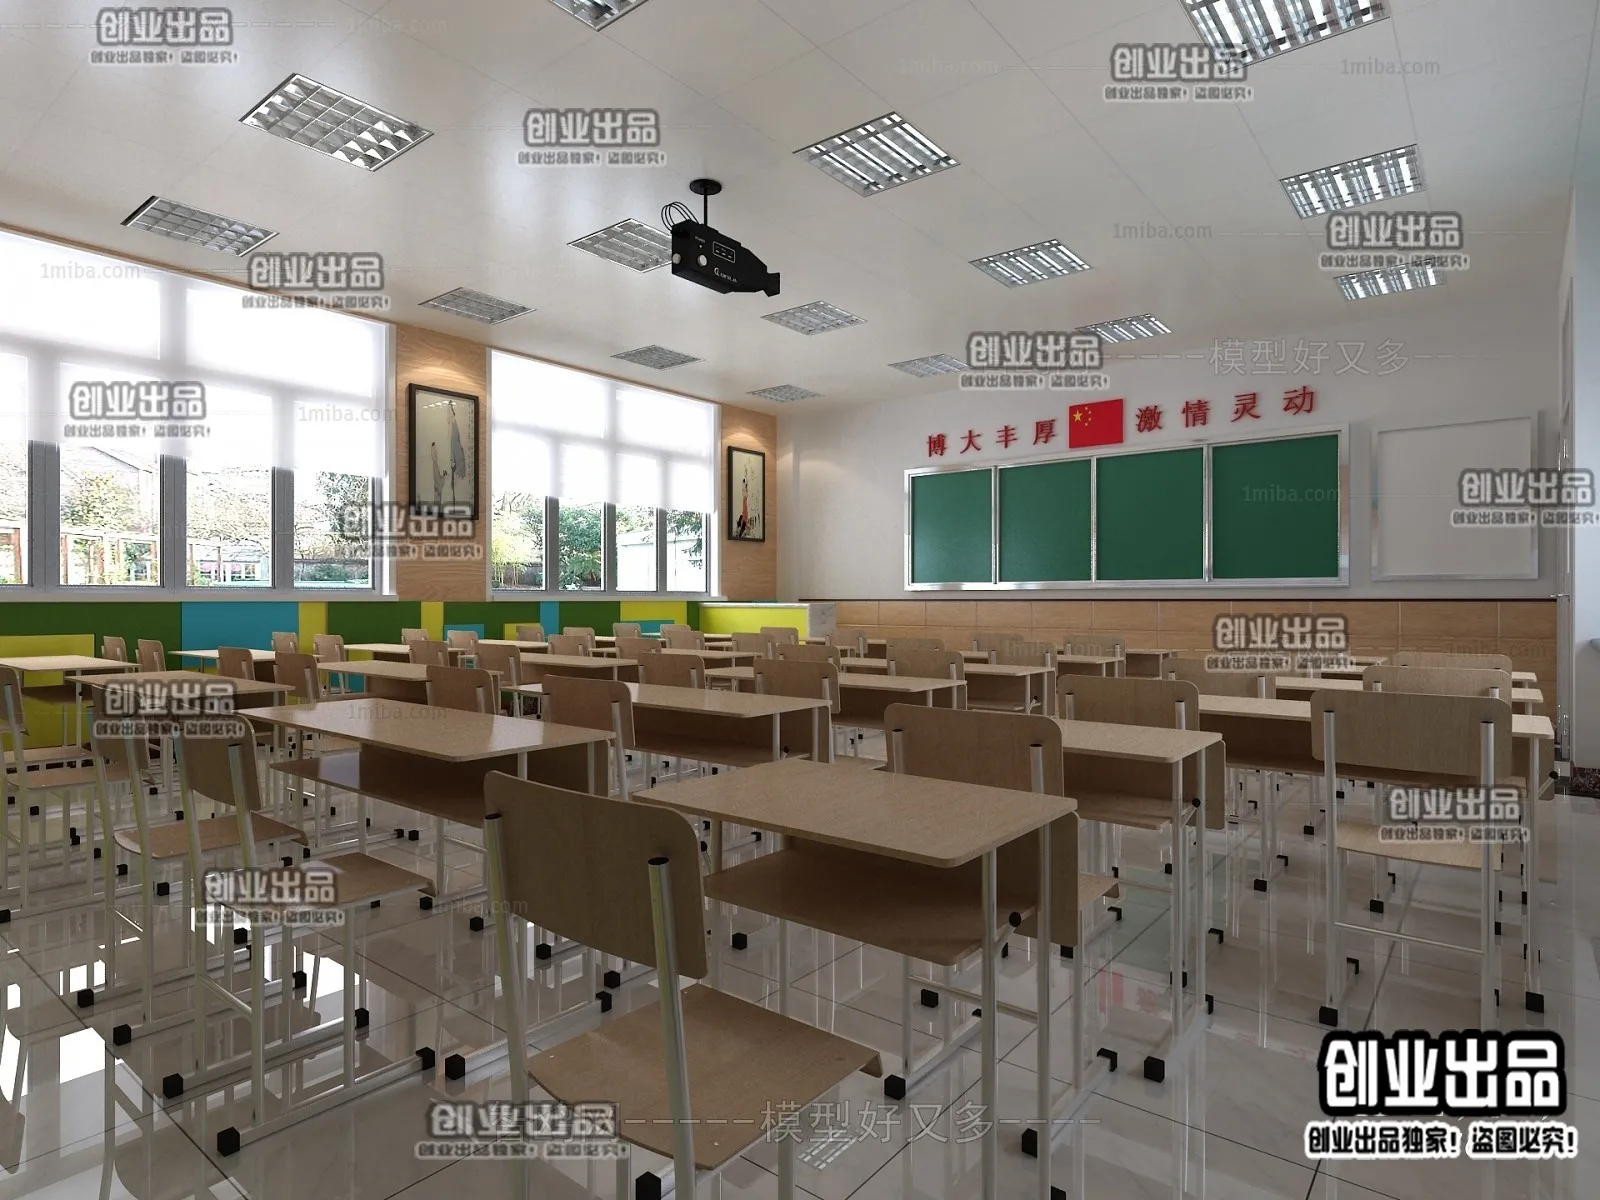 3D SCHOOL INTERIOR (VRAY) – CLASSROOM 3D SCENES – 009